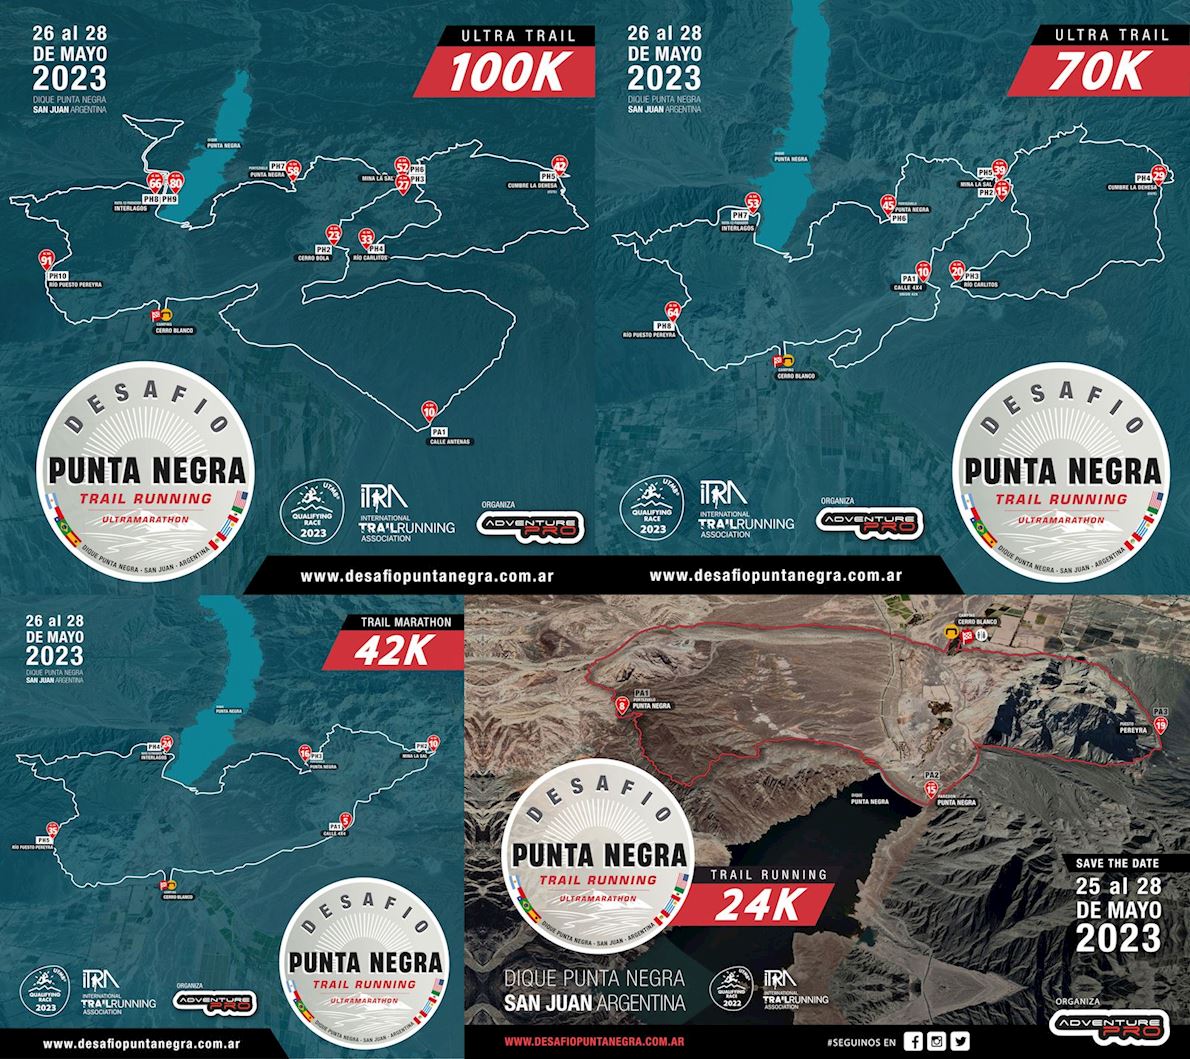 Desafio Punta Negra Trail Ultra Mappa del percorso